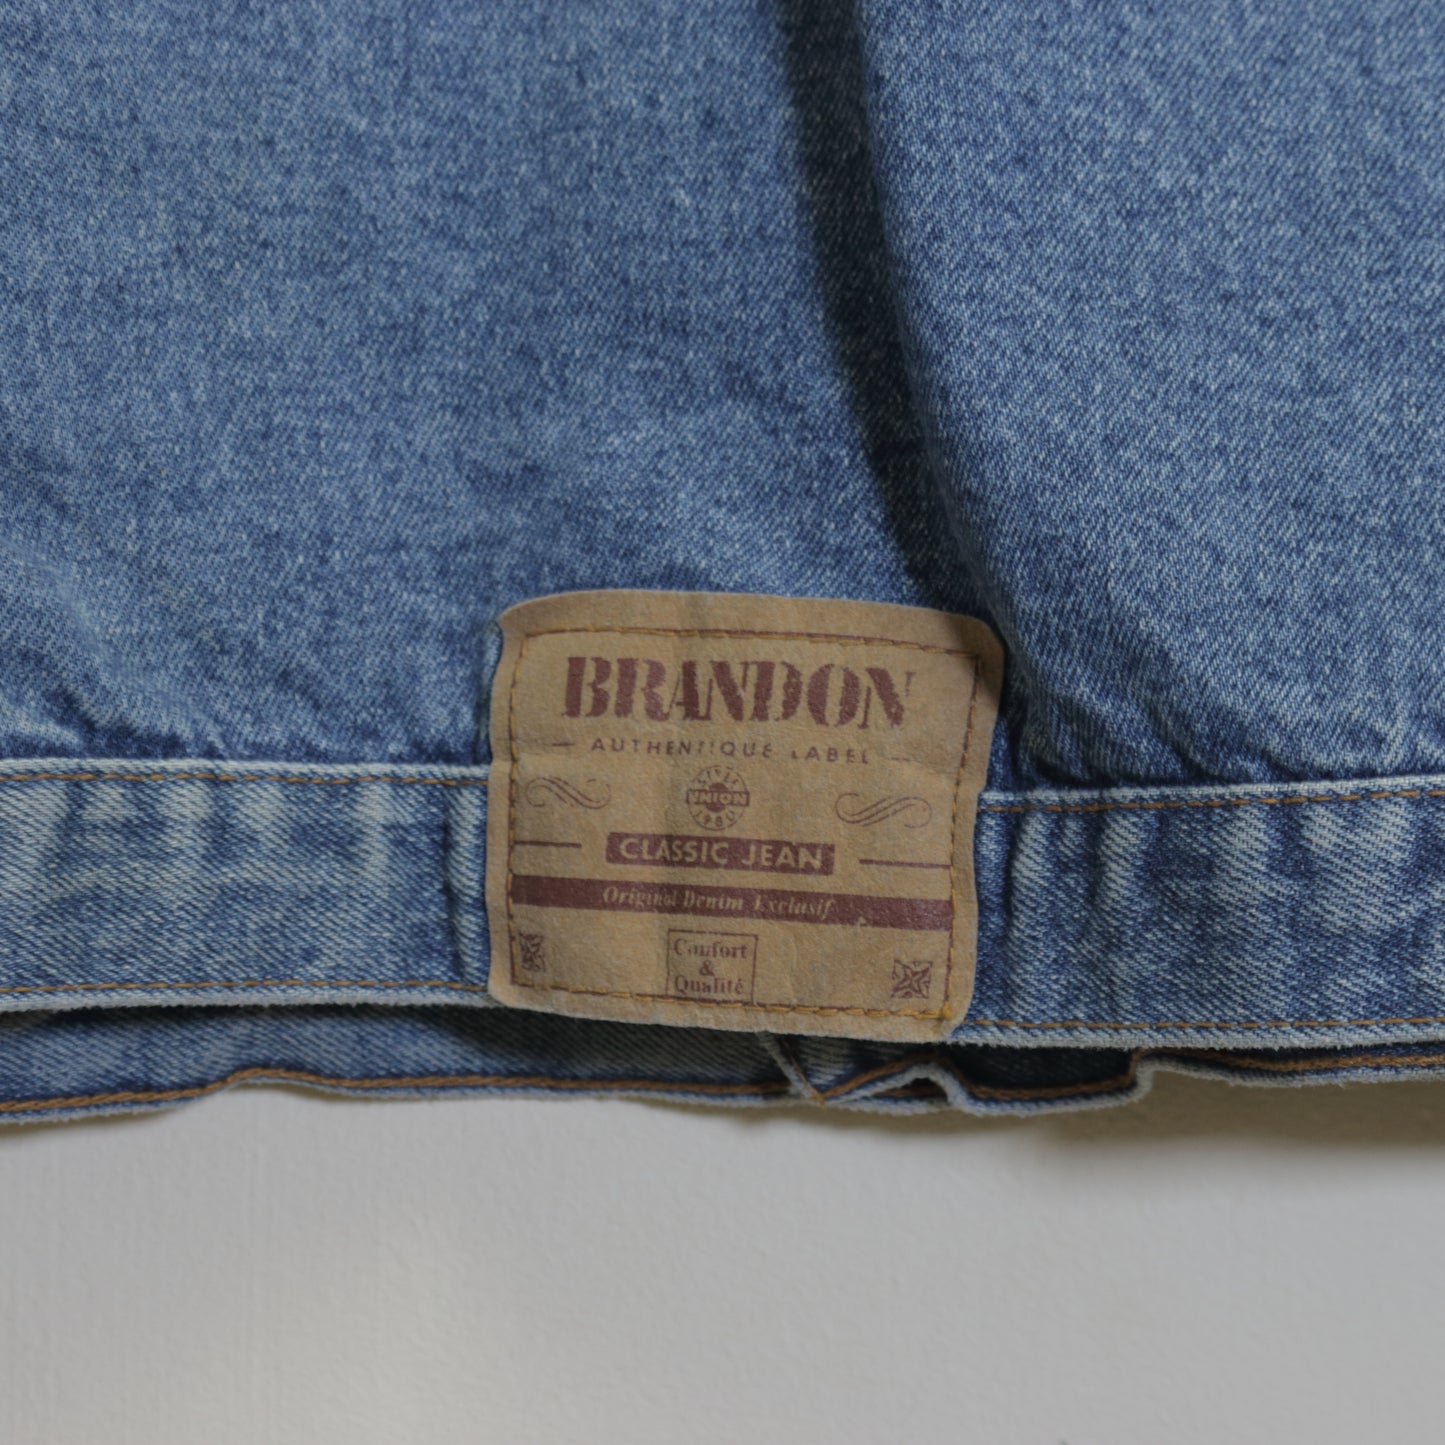 Vintage Brandon Denim jacket in blue. Best fits L